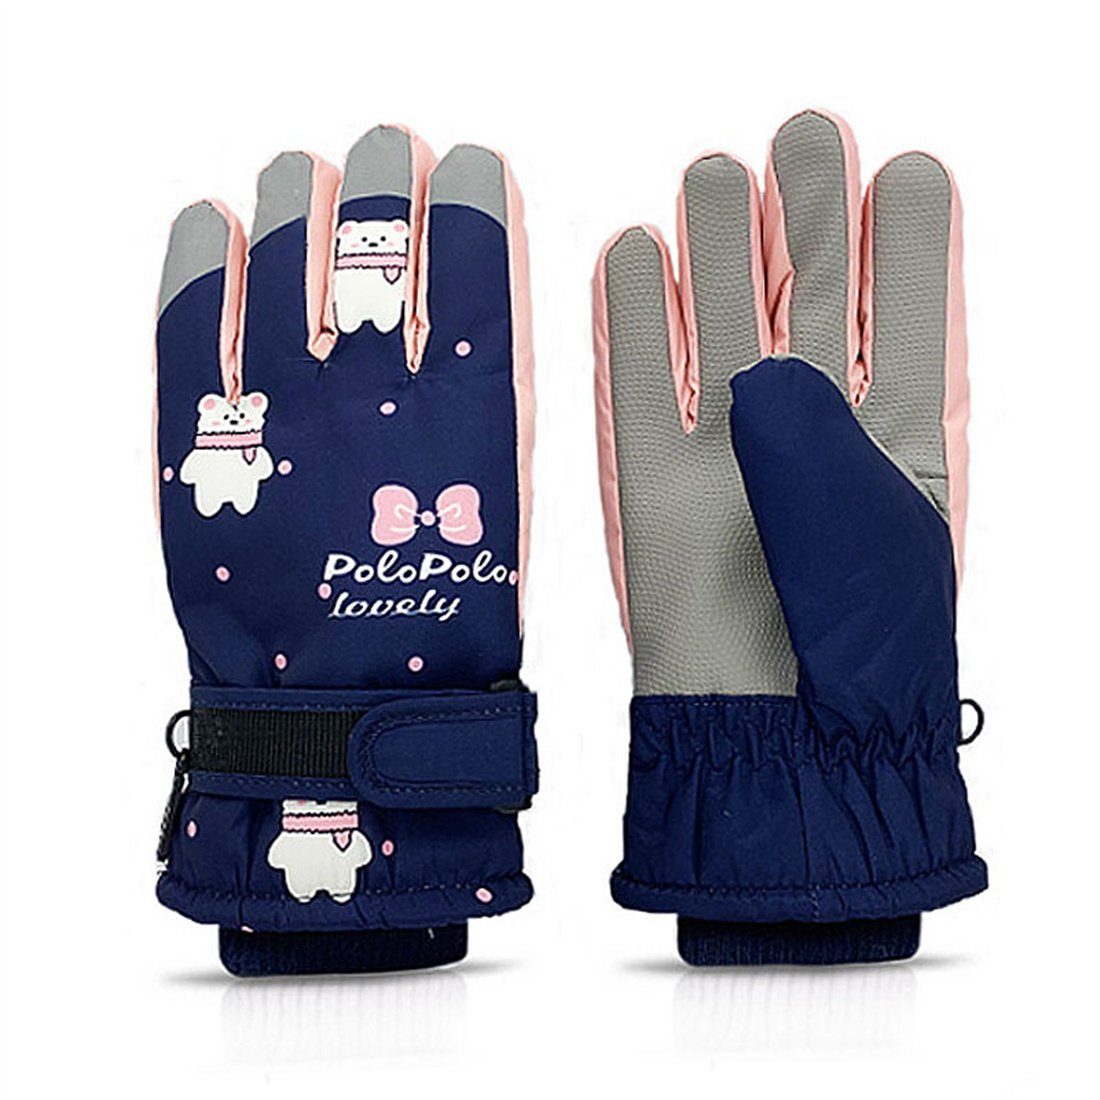 DÖRÖY blau für für 6-12 Kinder, Winter-Skihandschuhe Handschuhe Jahre Skihandschuhe warme